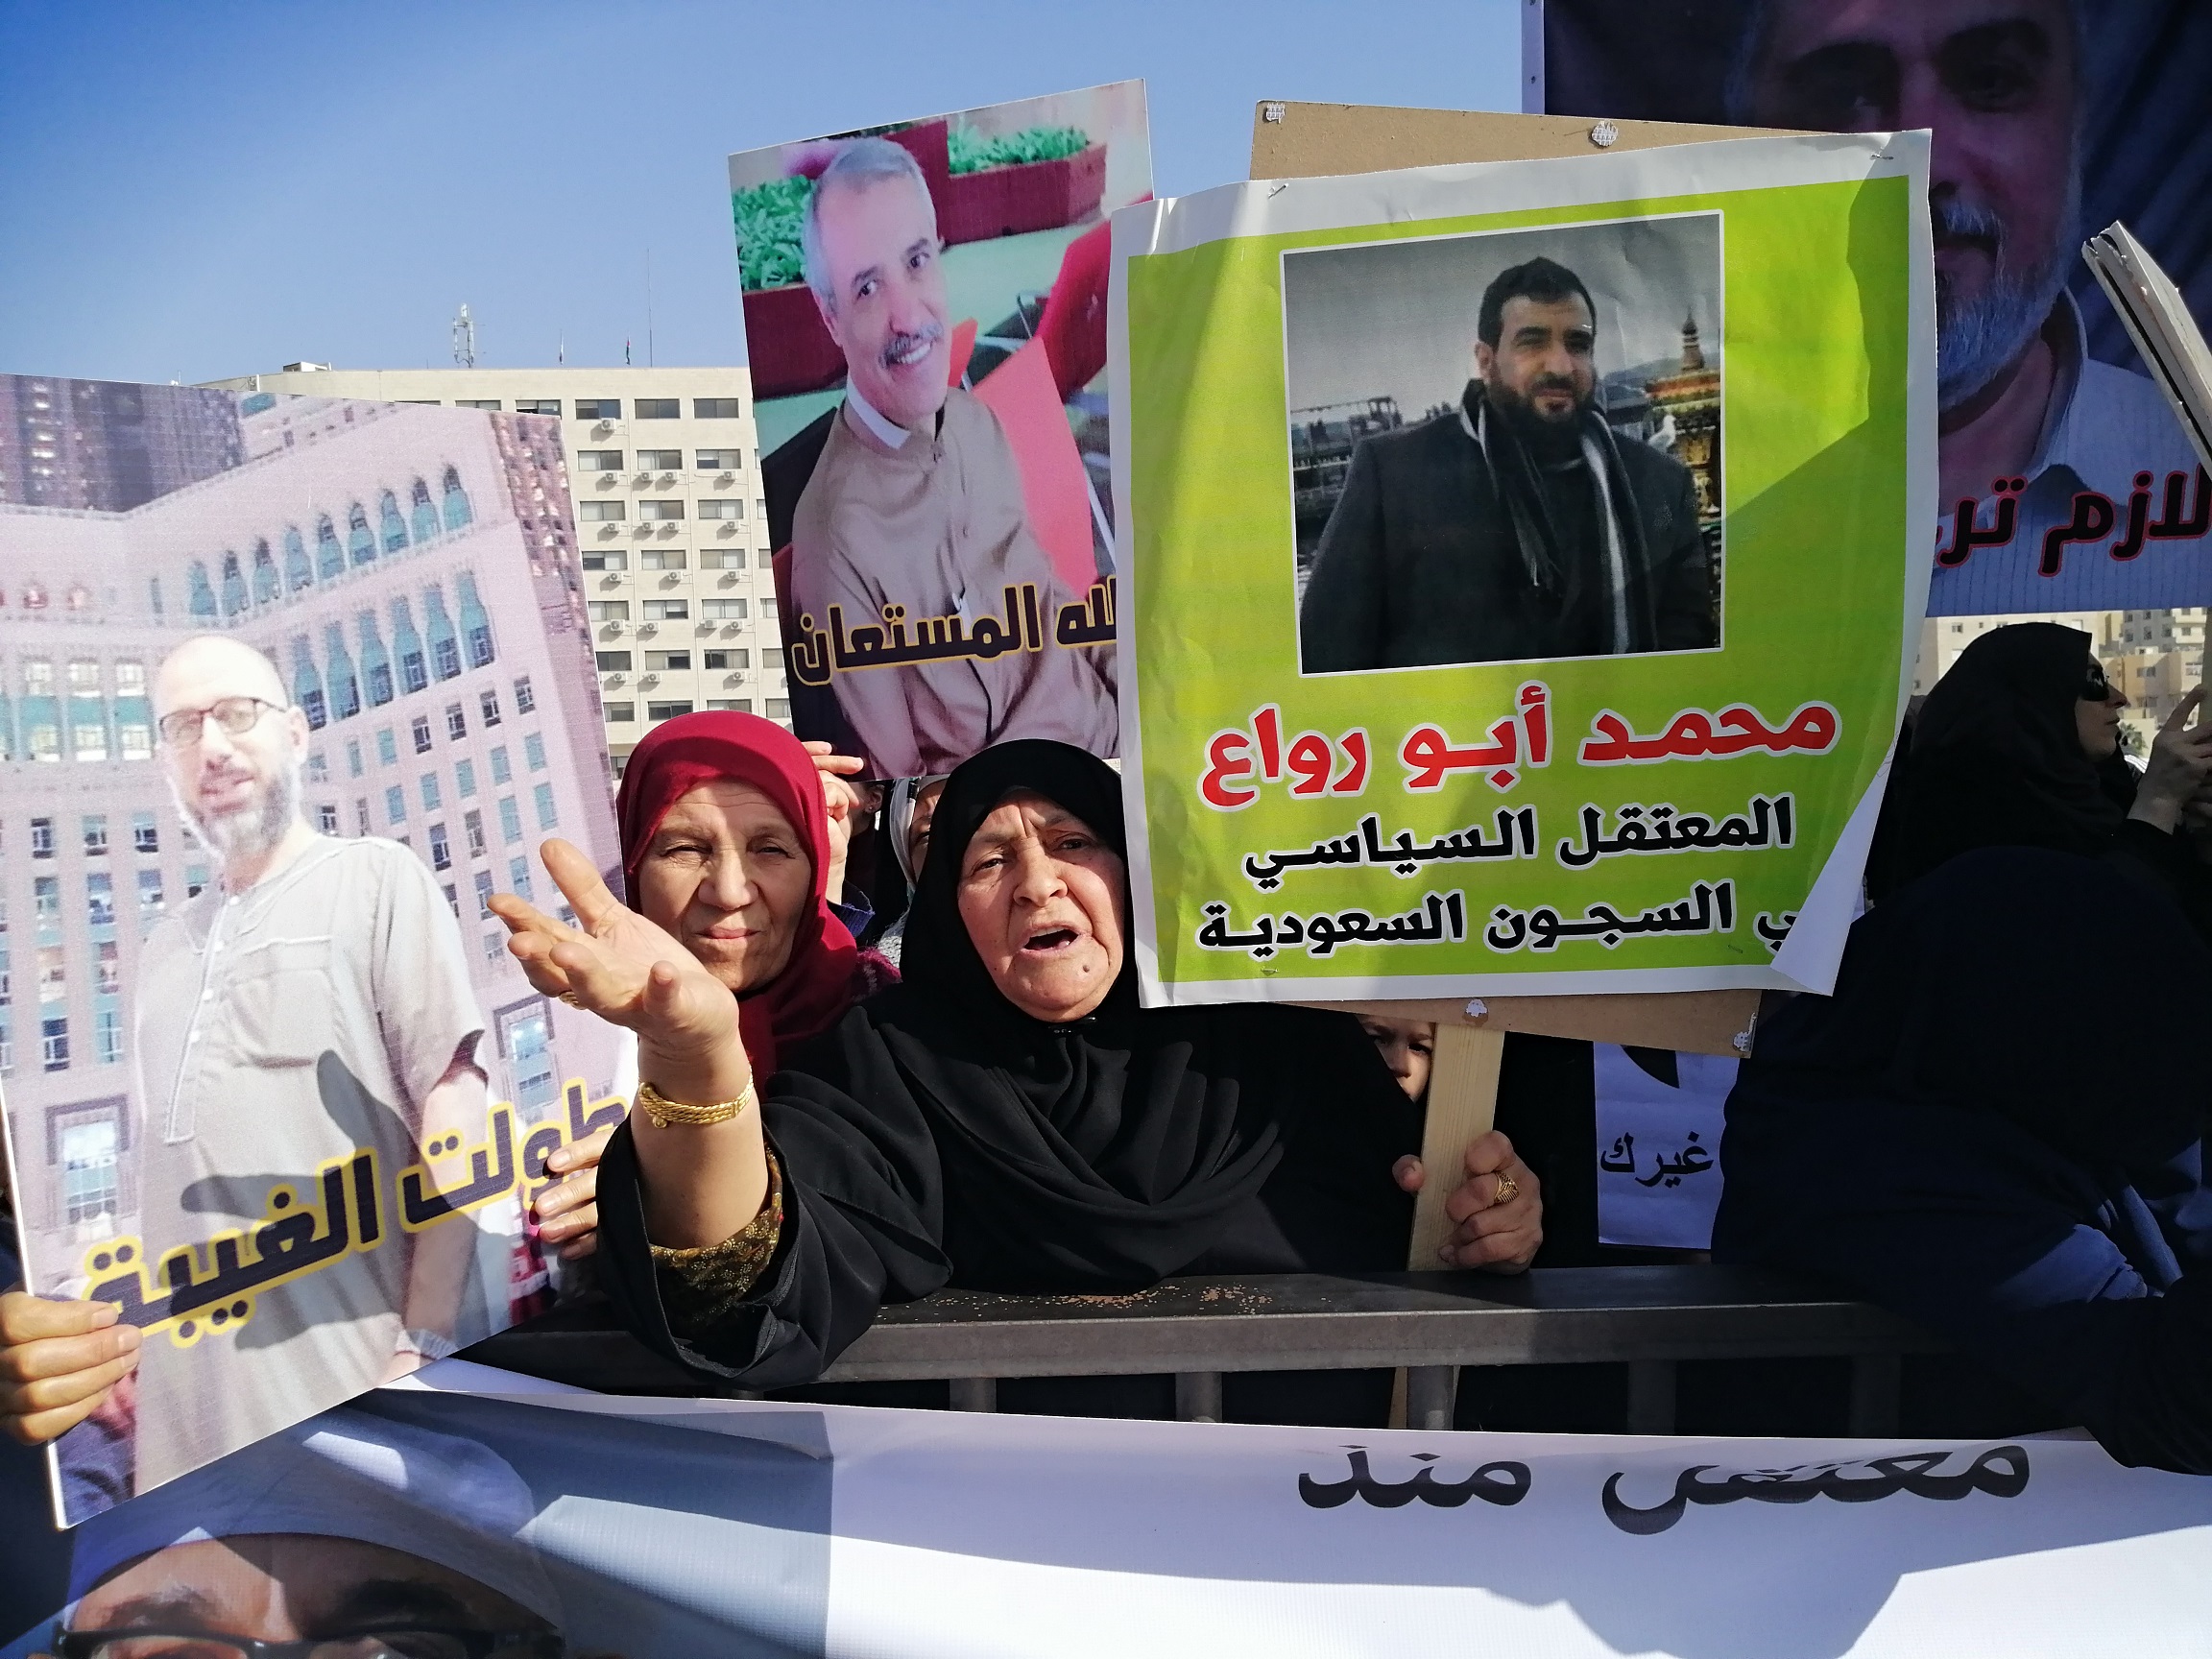 Jordanian detainees in Saudi Arabia